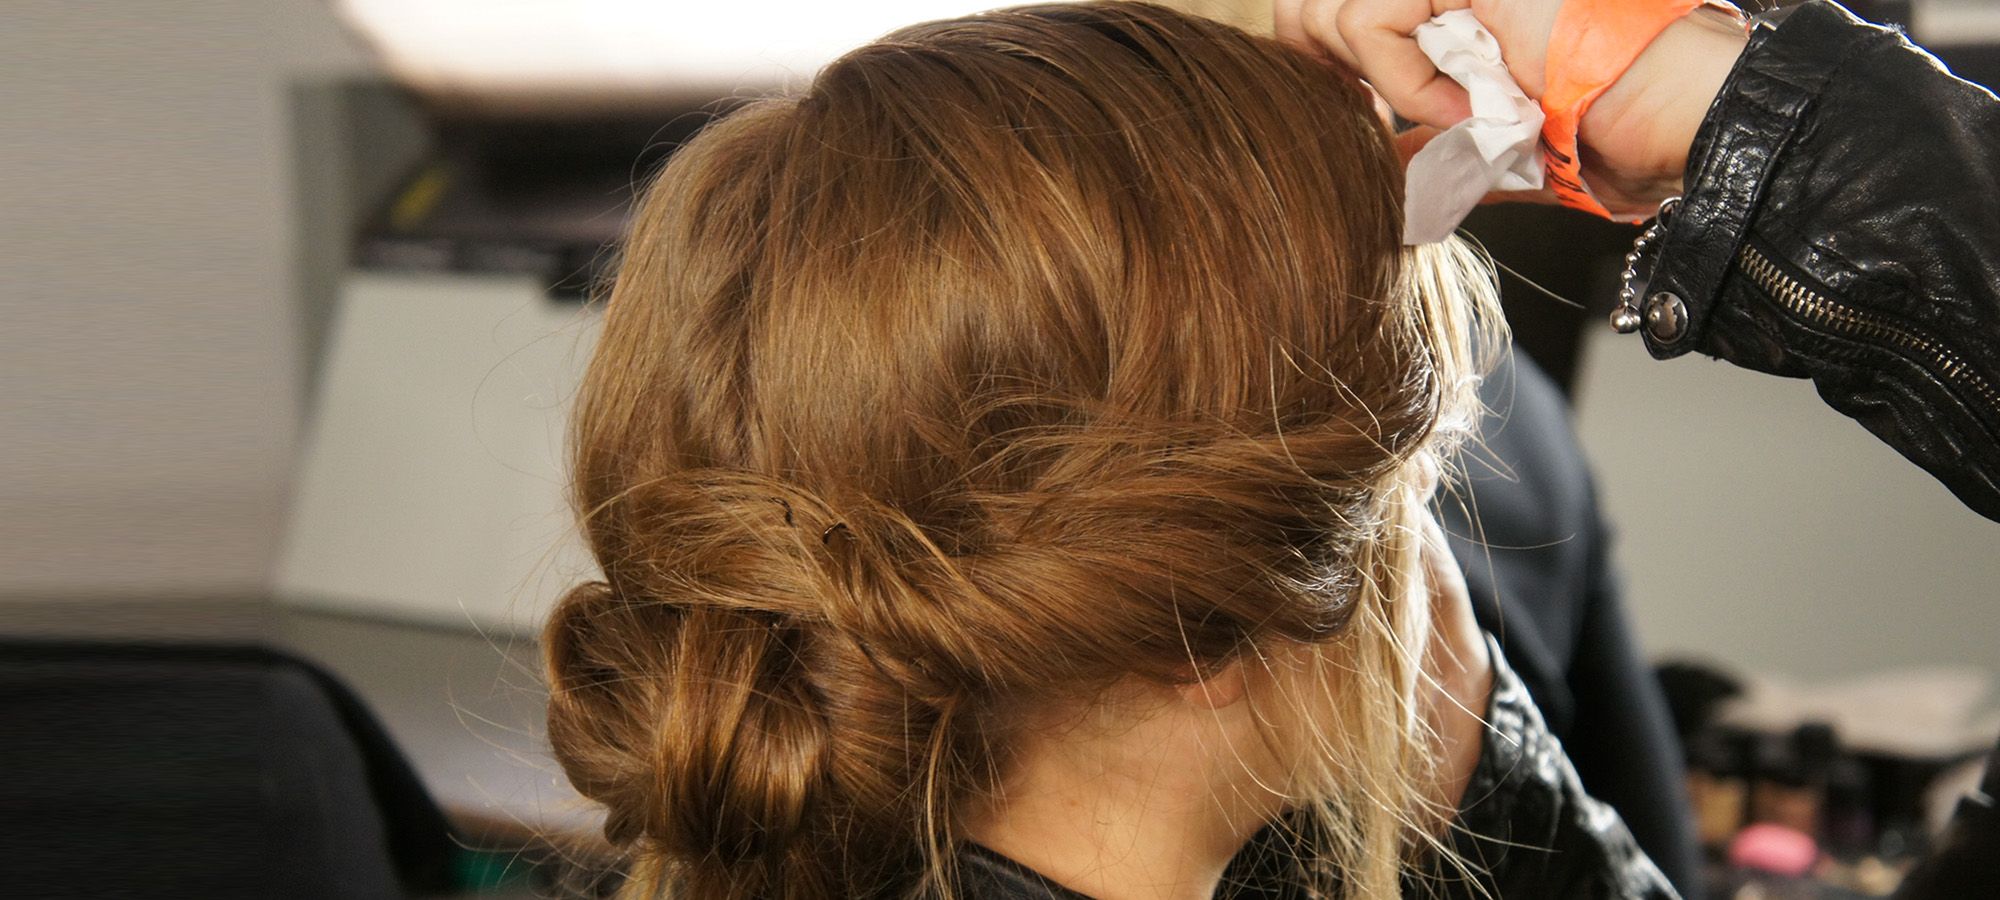 Capelli raccolti : tutti gli hairstyle della primavera-estate 2015